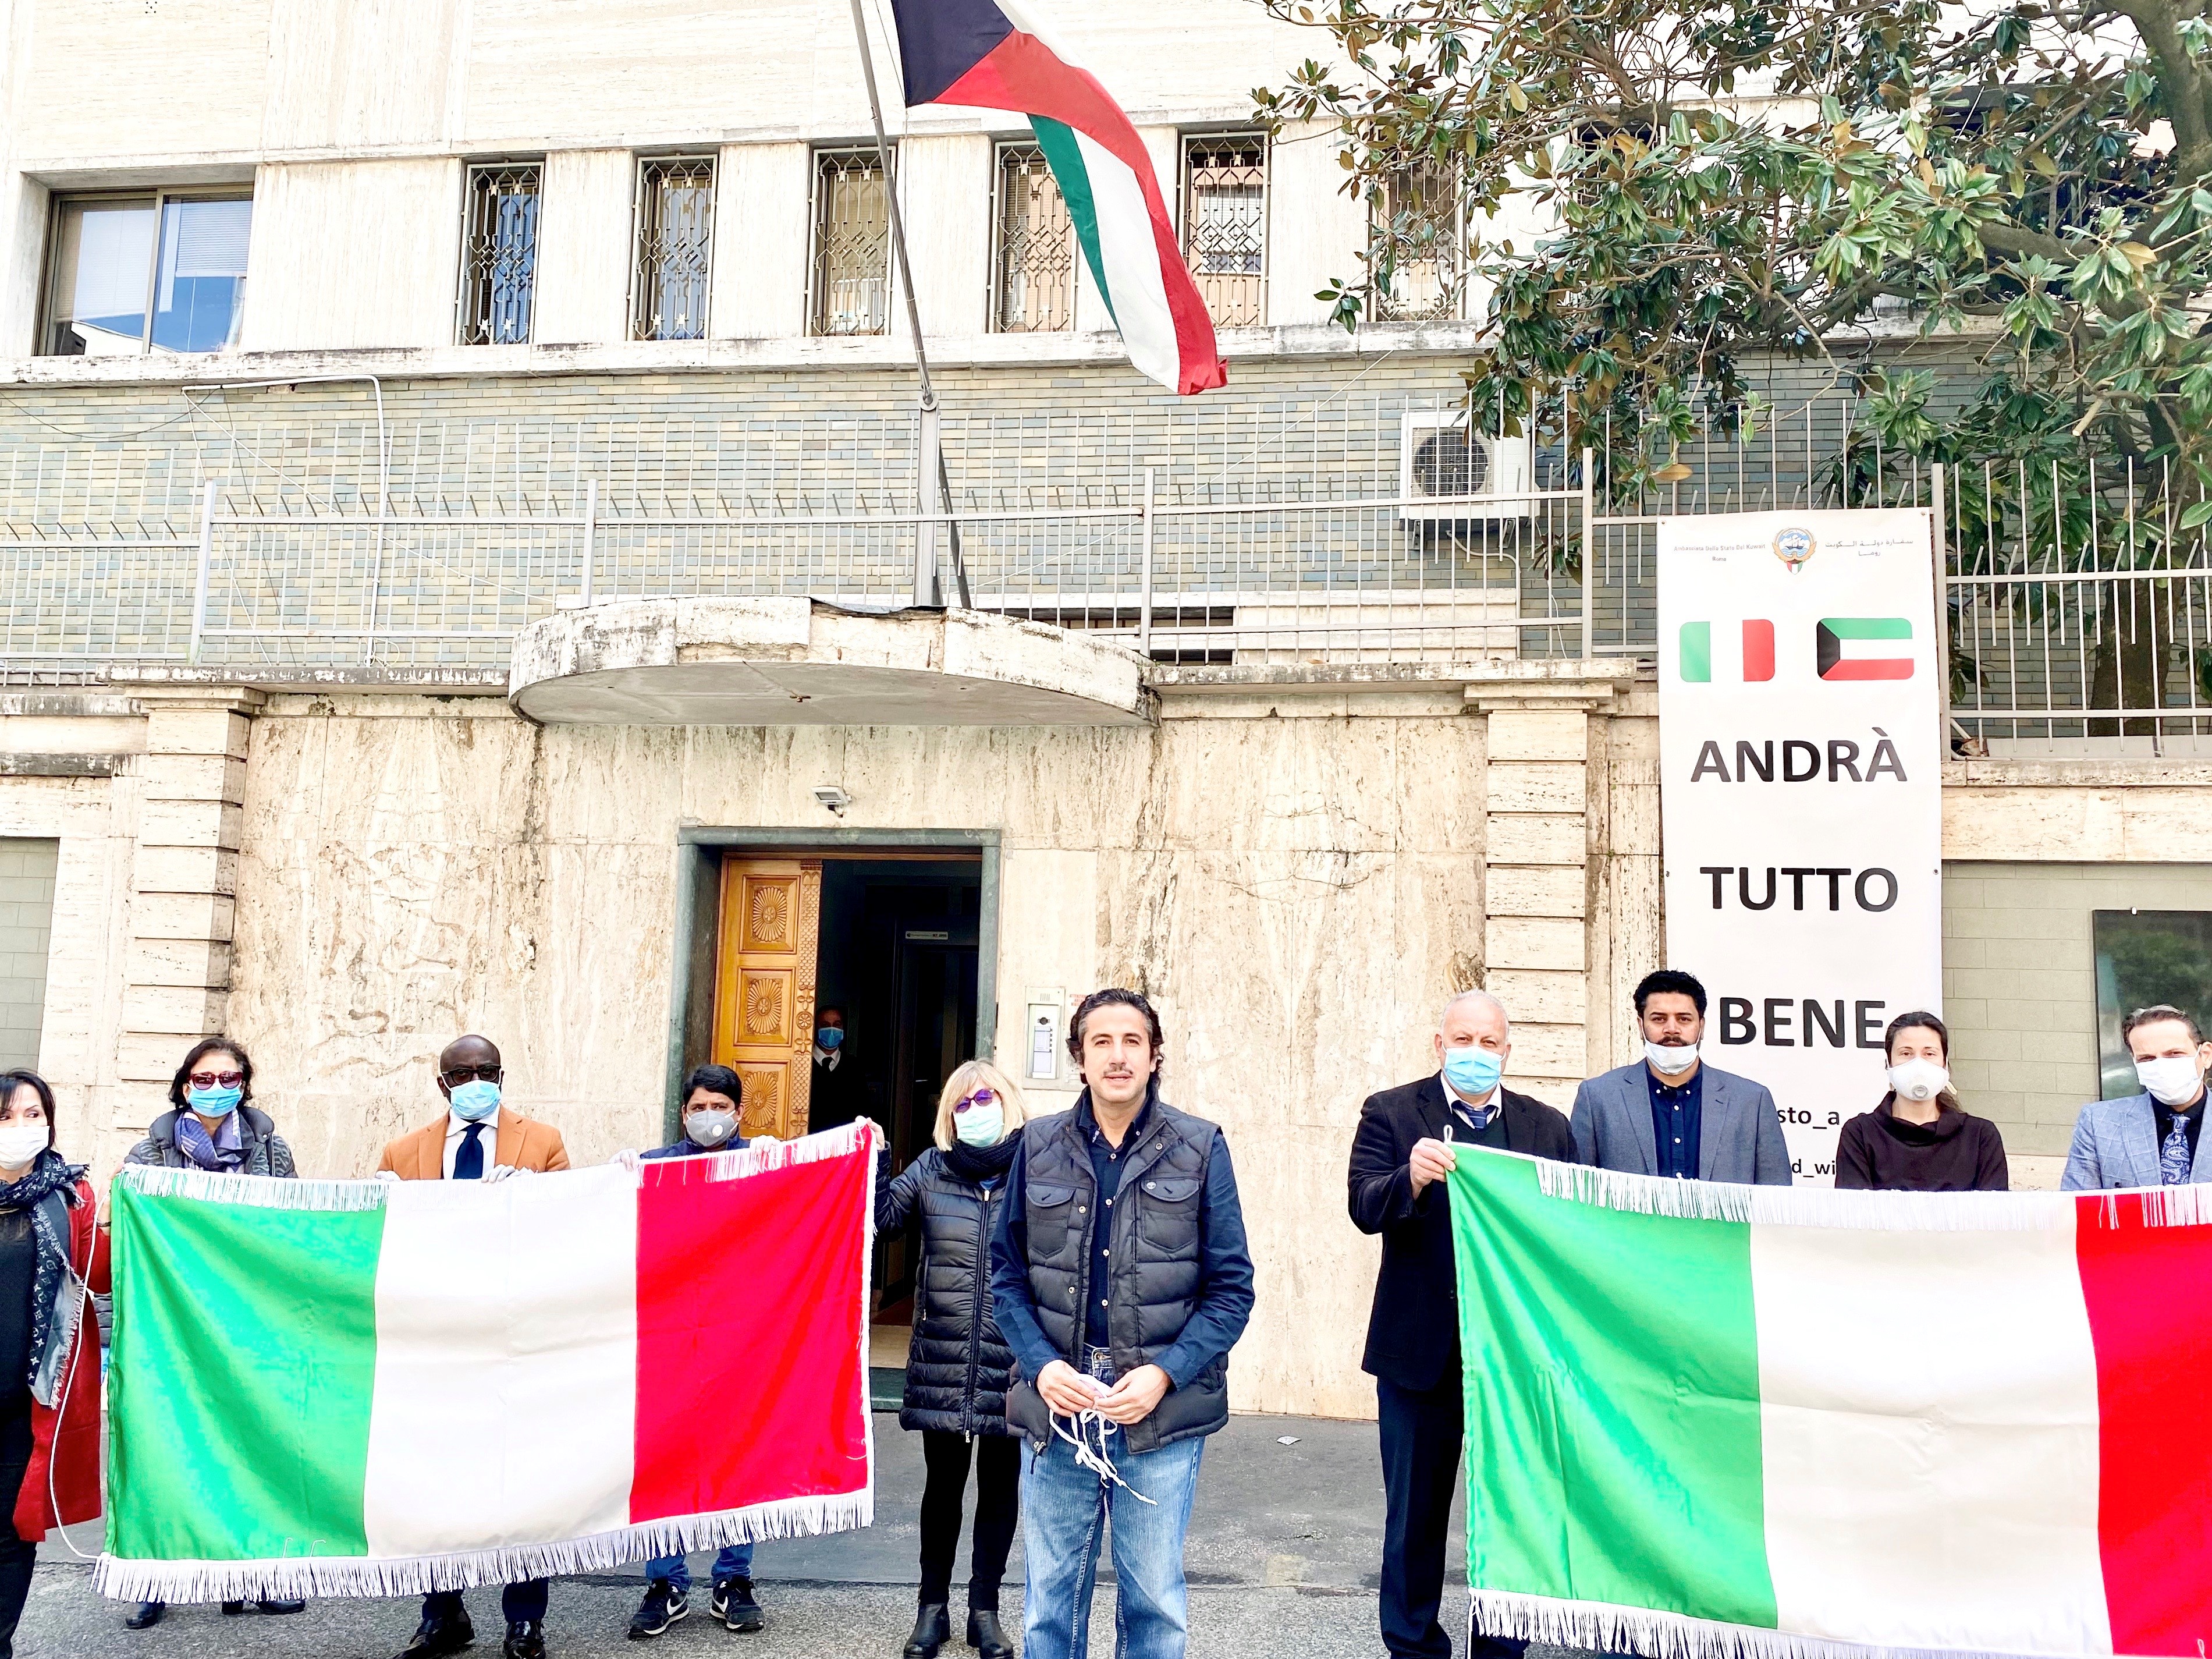 السفير الشيخ عزام الصباح يشارك مع موظفي السفارة في وقفة الحداد على ضحايا كورونا في ايطاليا